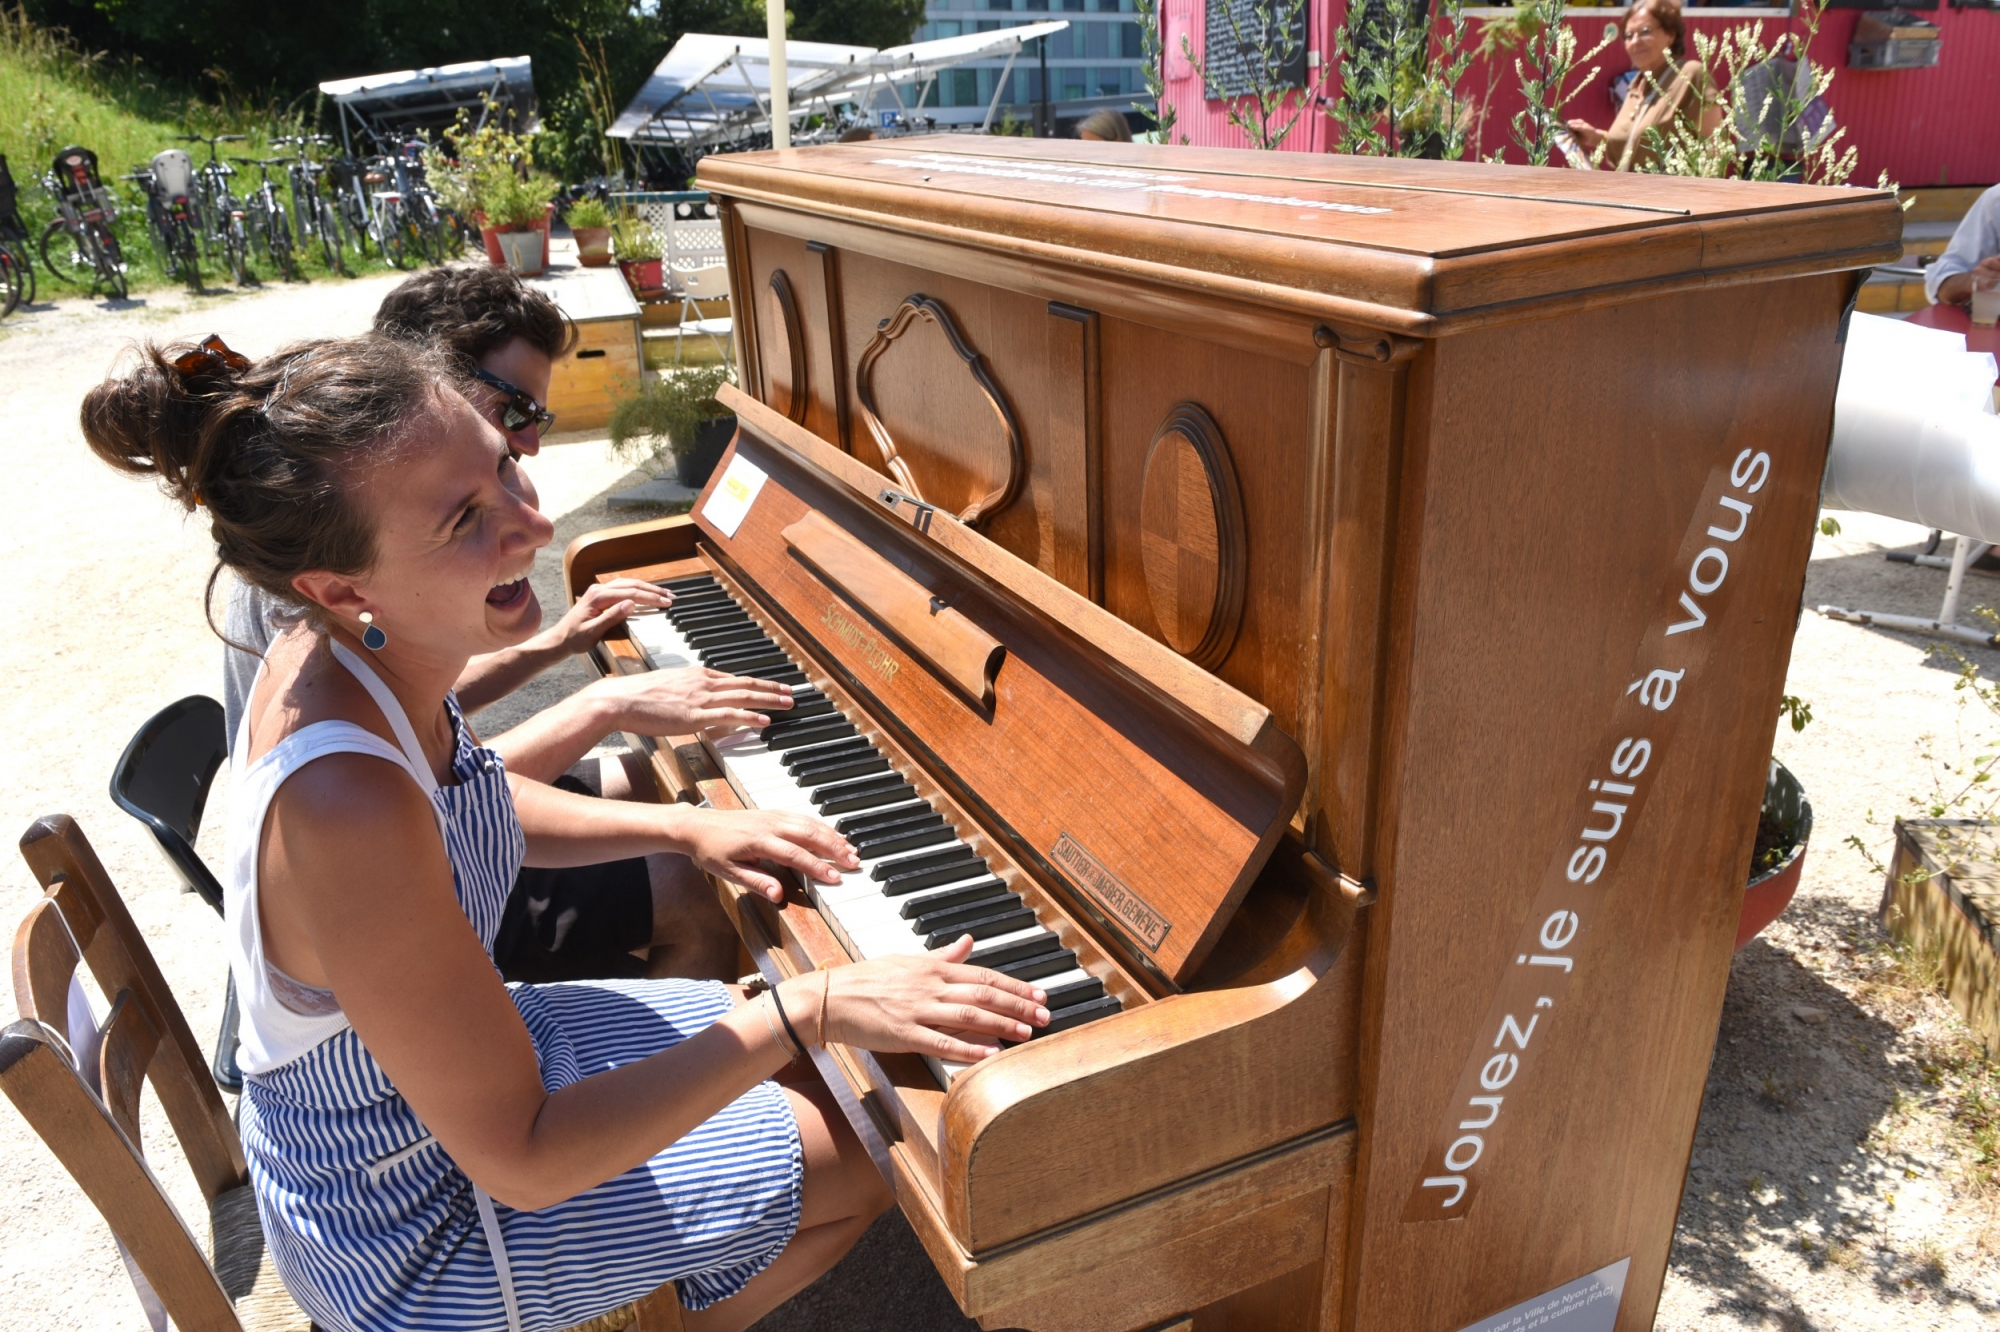 Piano jouez je suis a vous ici devant la roulotte Nyon le 13.6.2017 © photo Michel Perret